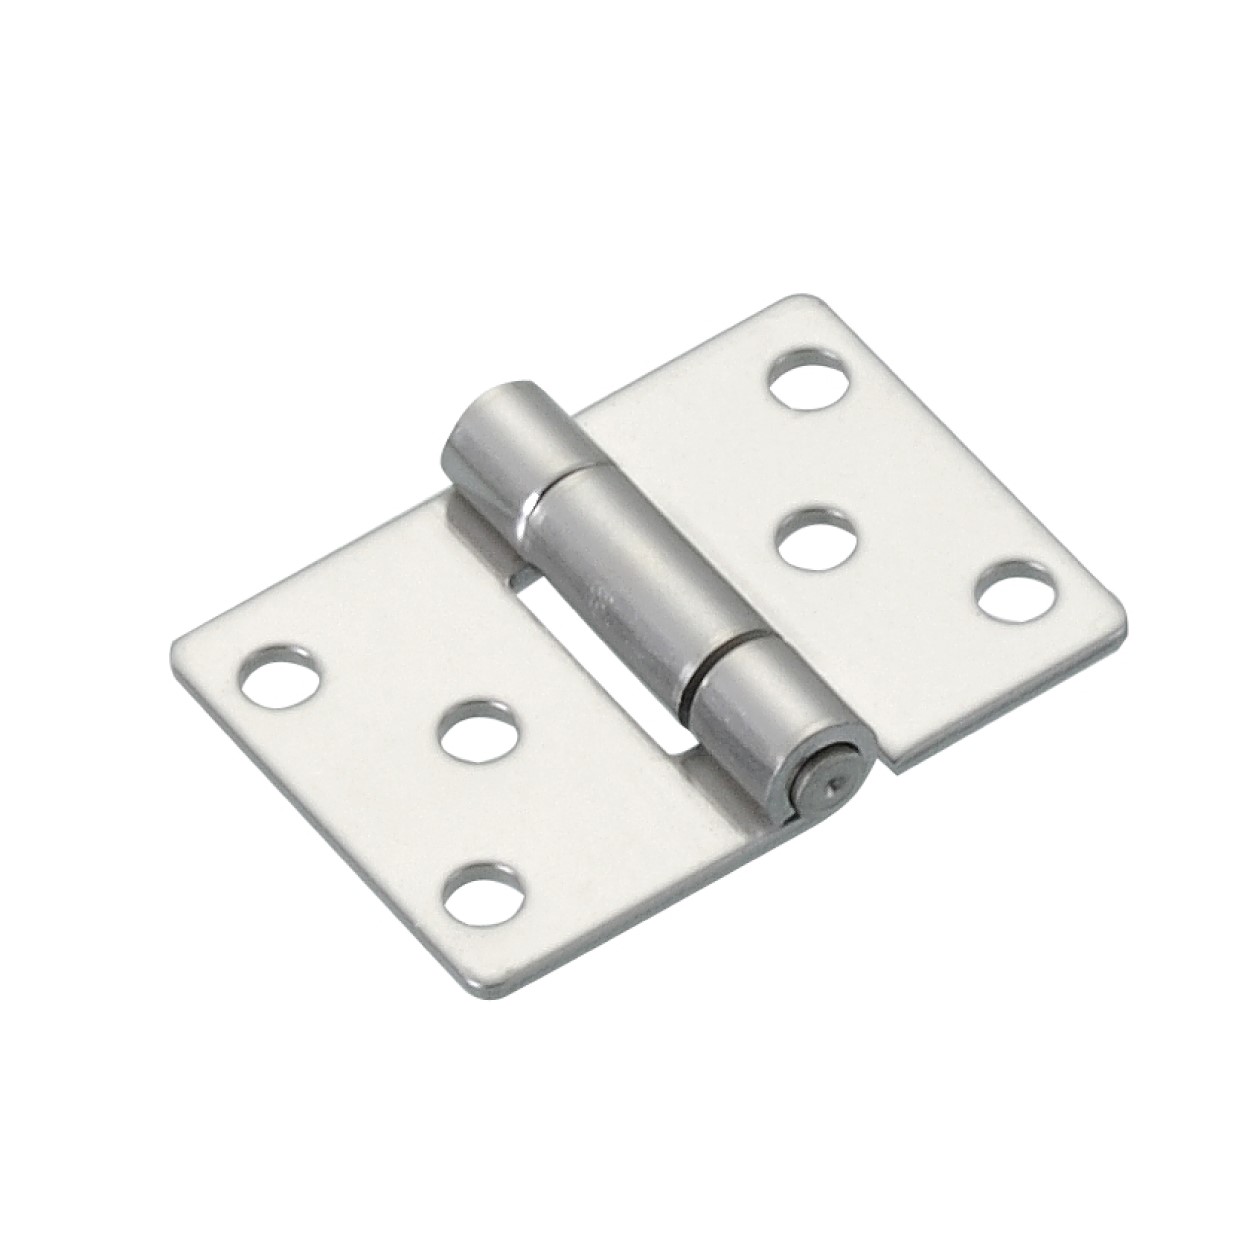 小型平面鉸鏈 AS(T)-1520  不鏽鋼/鋼製